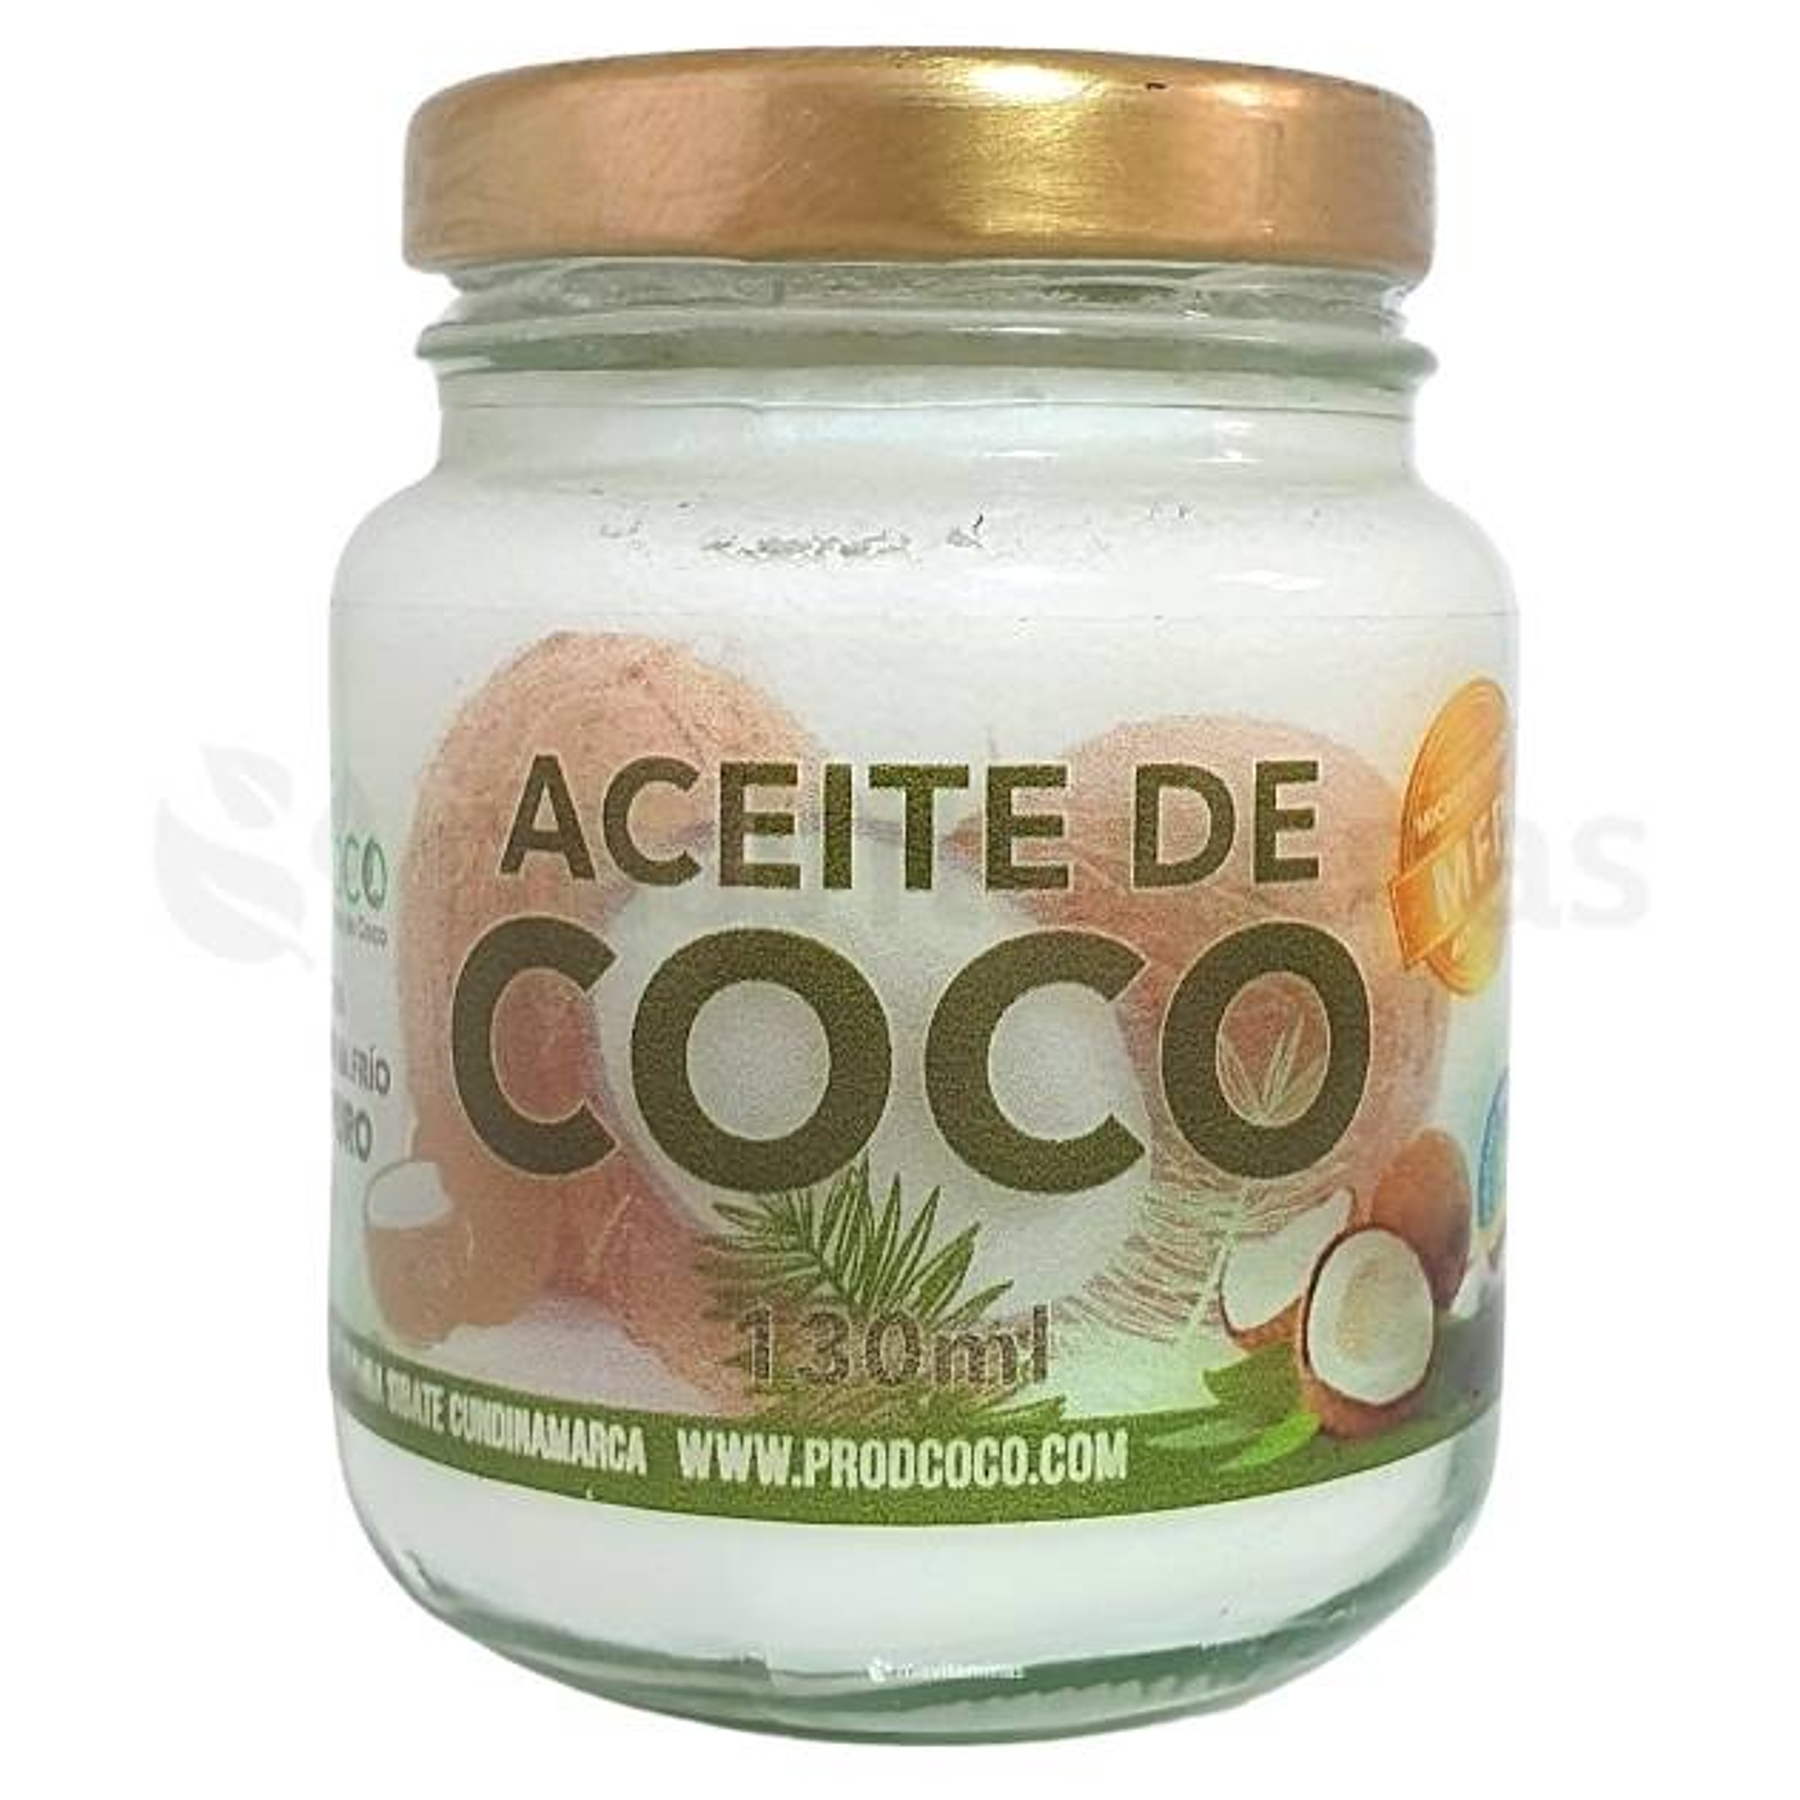 Aceite de Coco Prodcoco